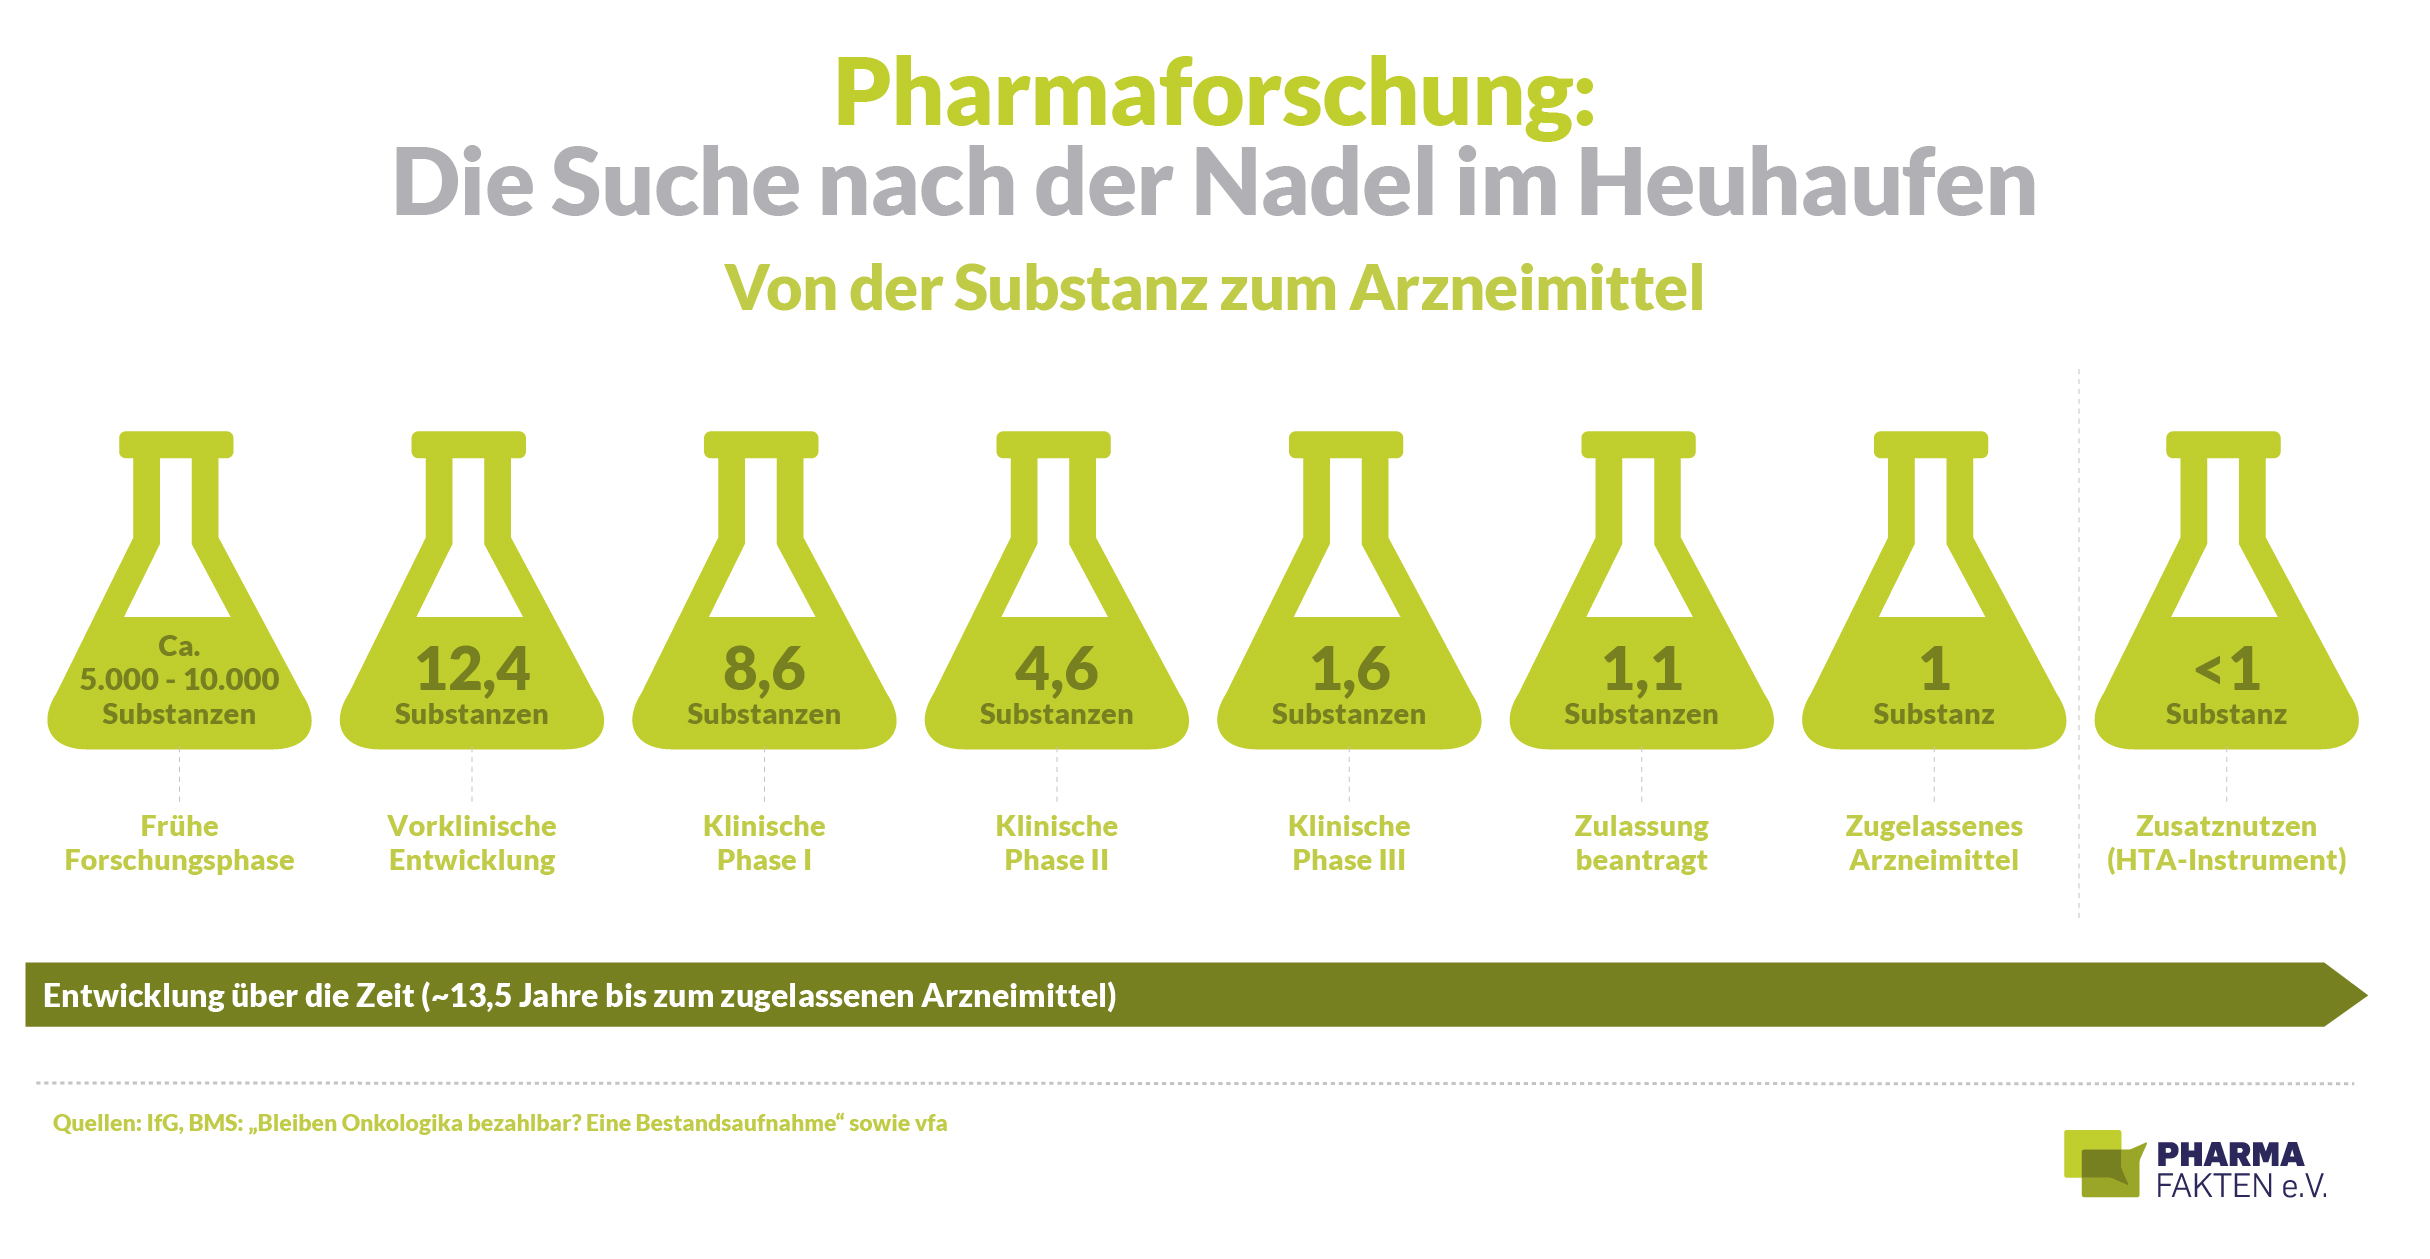 Pharmaforschung: Von der Substanz zum Arzneimittel